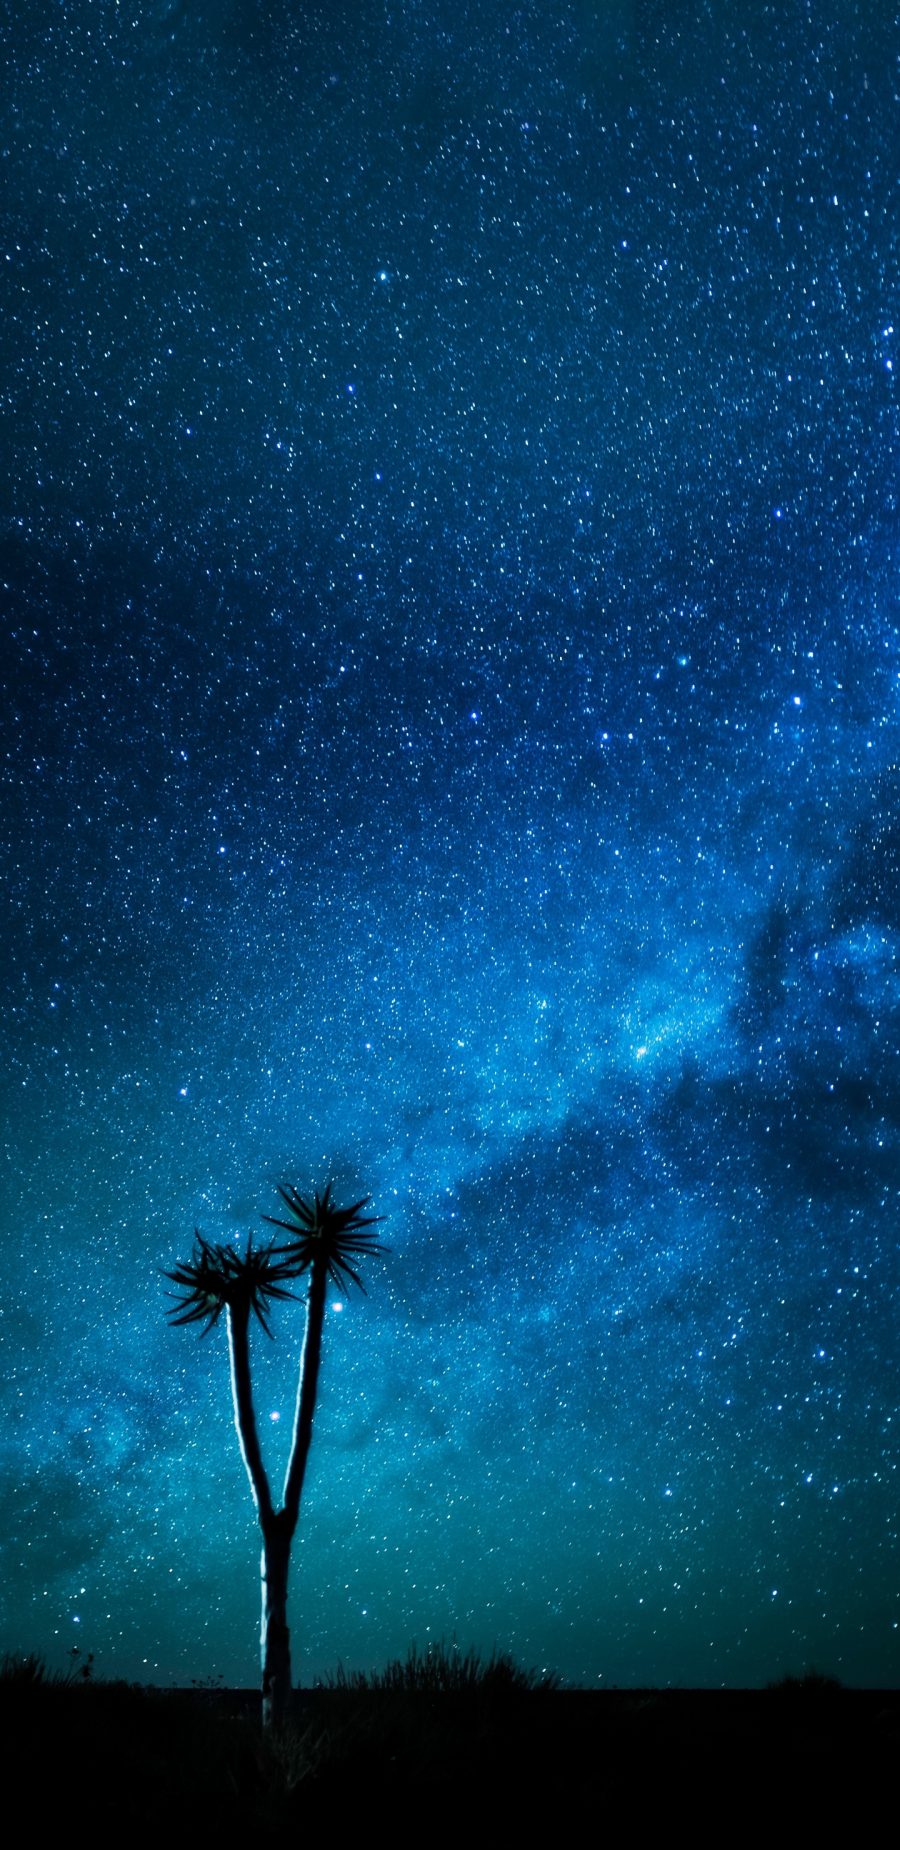 晚上的银河系星空壁纸图片 全面屏手机壁纸